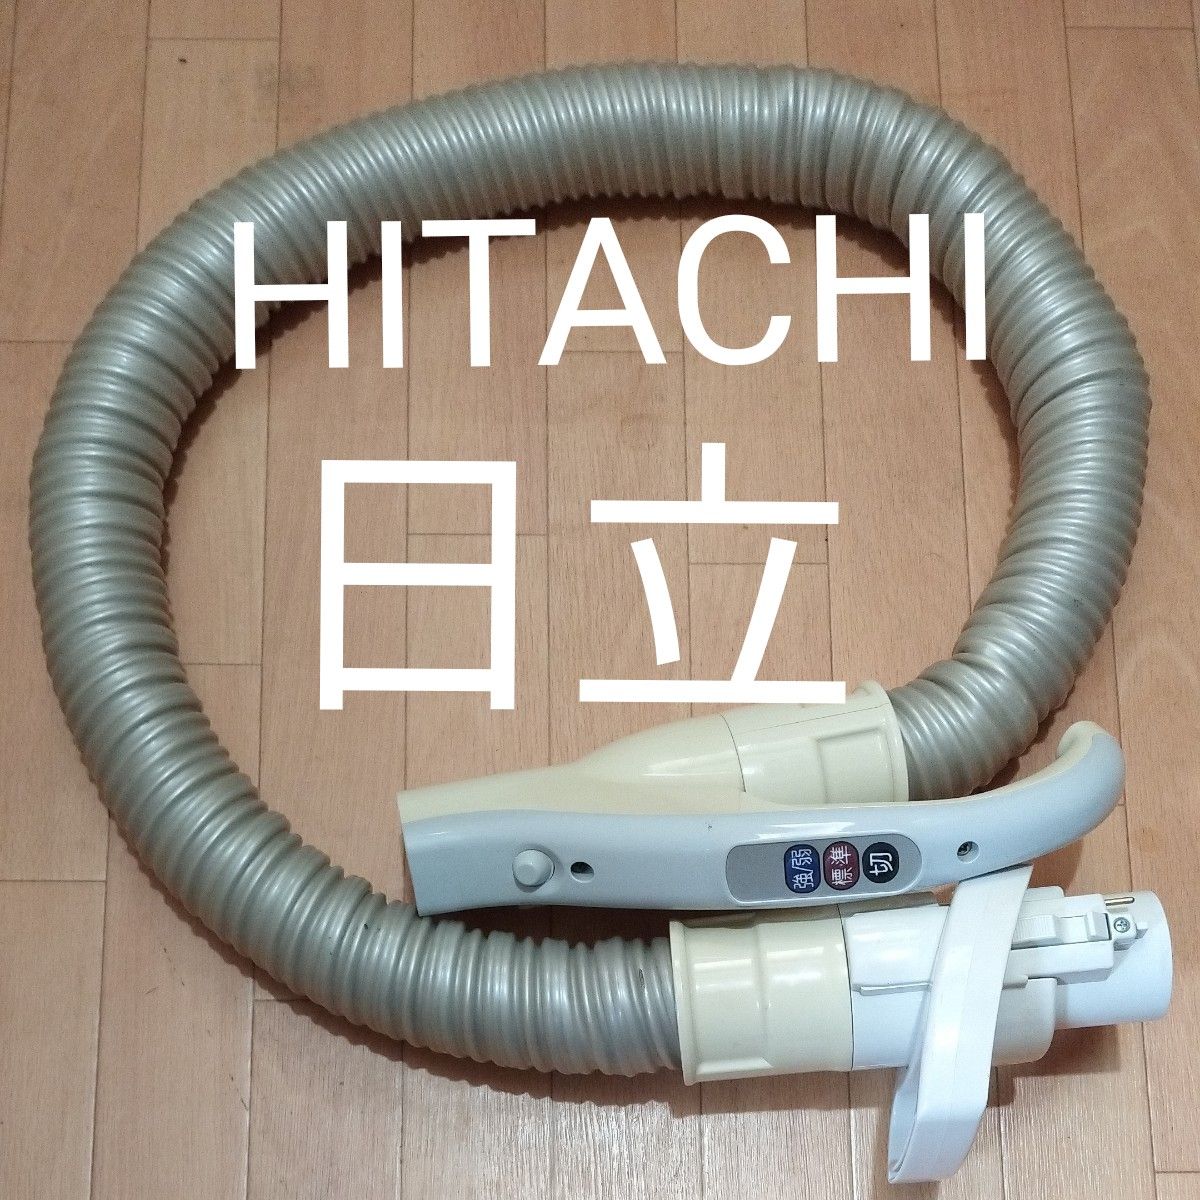 HITACHI BW-D8HV用 メーカー純正 お湯取ホース スイコミノズル 糸くず